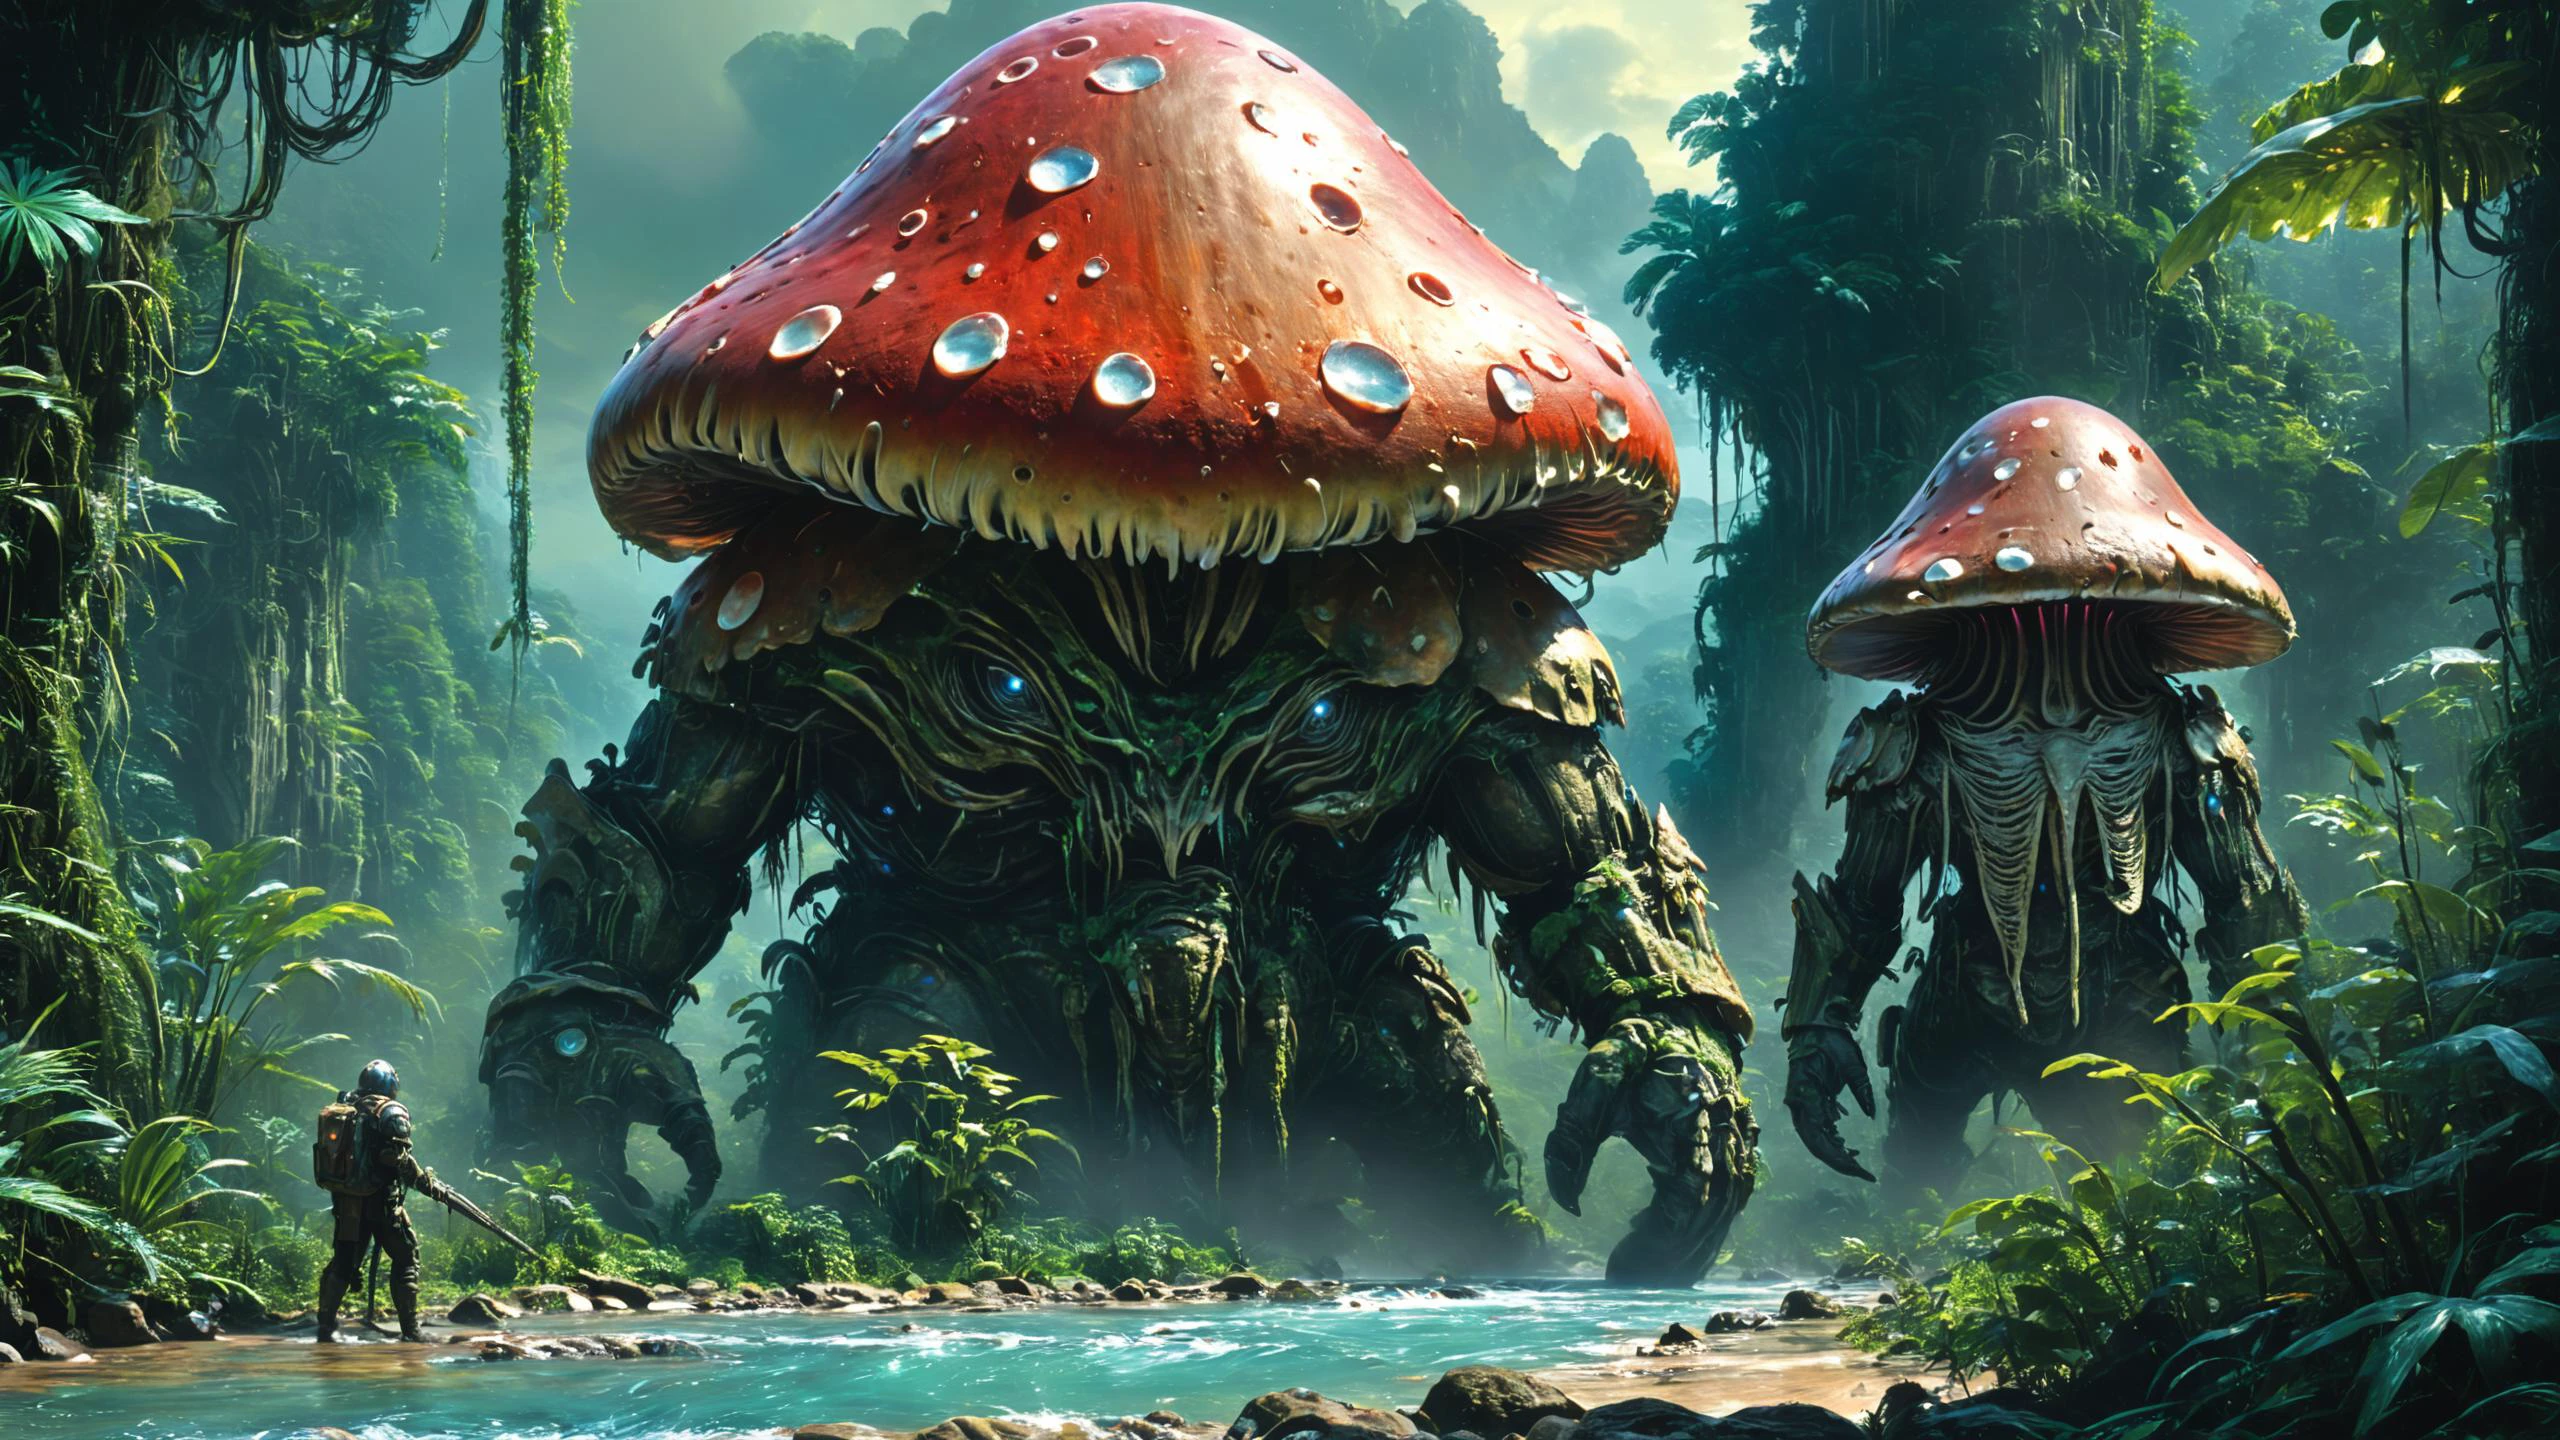 外星人 landscape, 生物力学的金属巨人, 巨型蘑菇高耸如巨大的柱子, 清澈的河流蜿蜒穿过茂密的丛林 , 外星人 [动物:弗洛拉:0.5], 全息摄影, T恤设计AF, 聚醚砜UV, 博斯泰尔